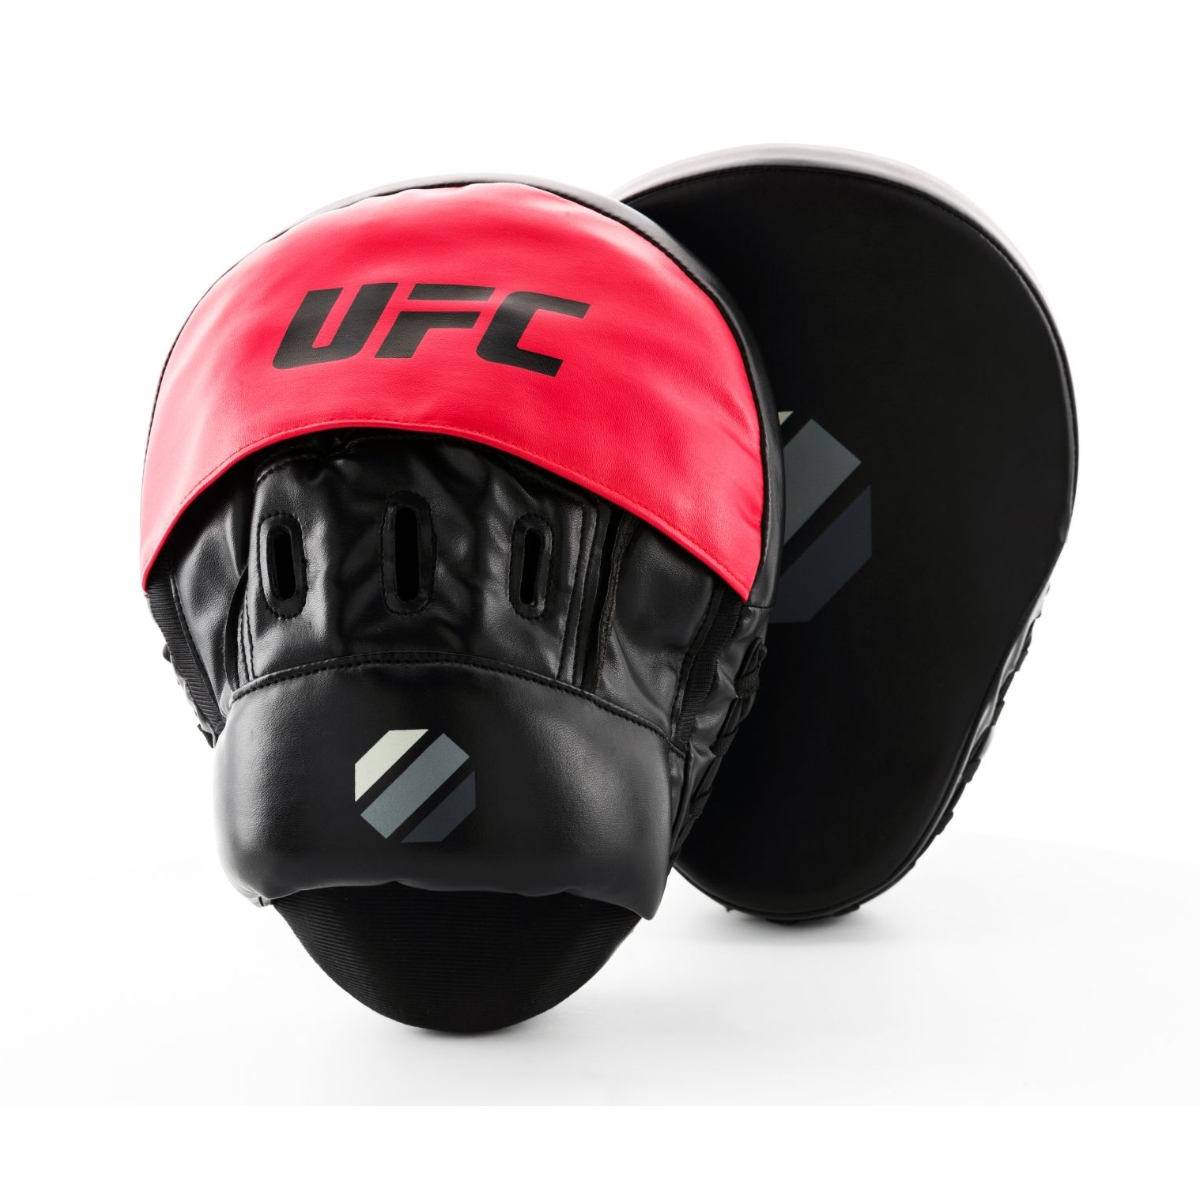 Brug UFC Curved Focus Mitts til en forbedret oplevelse